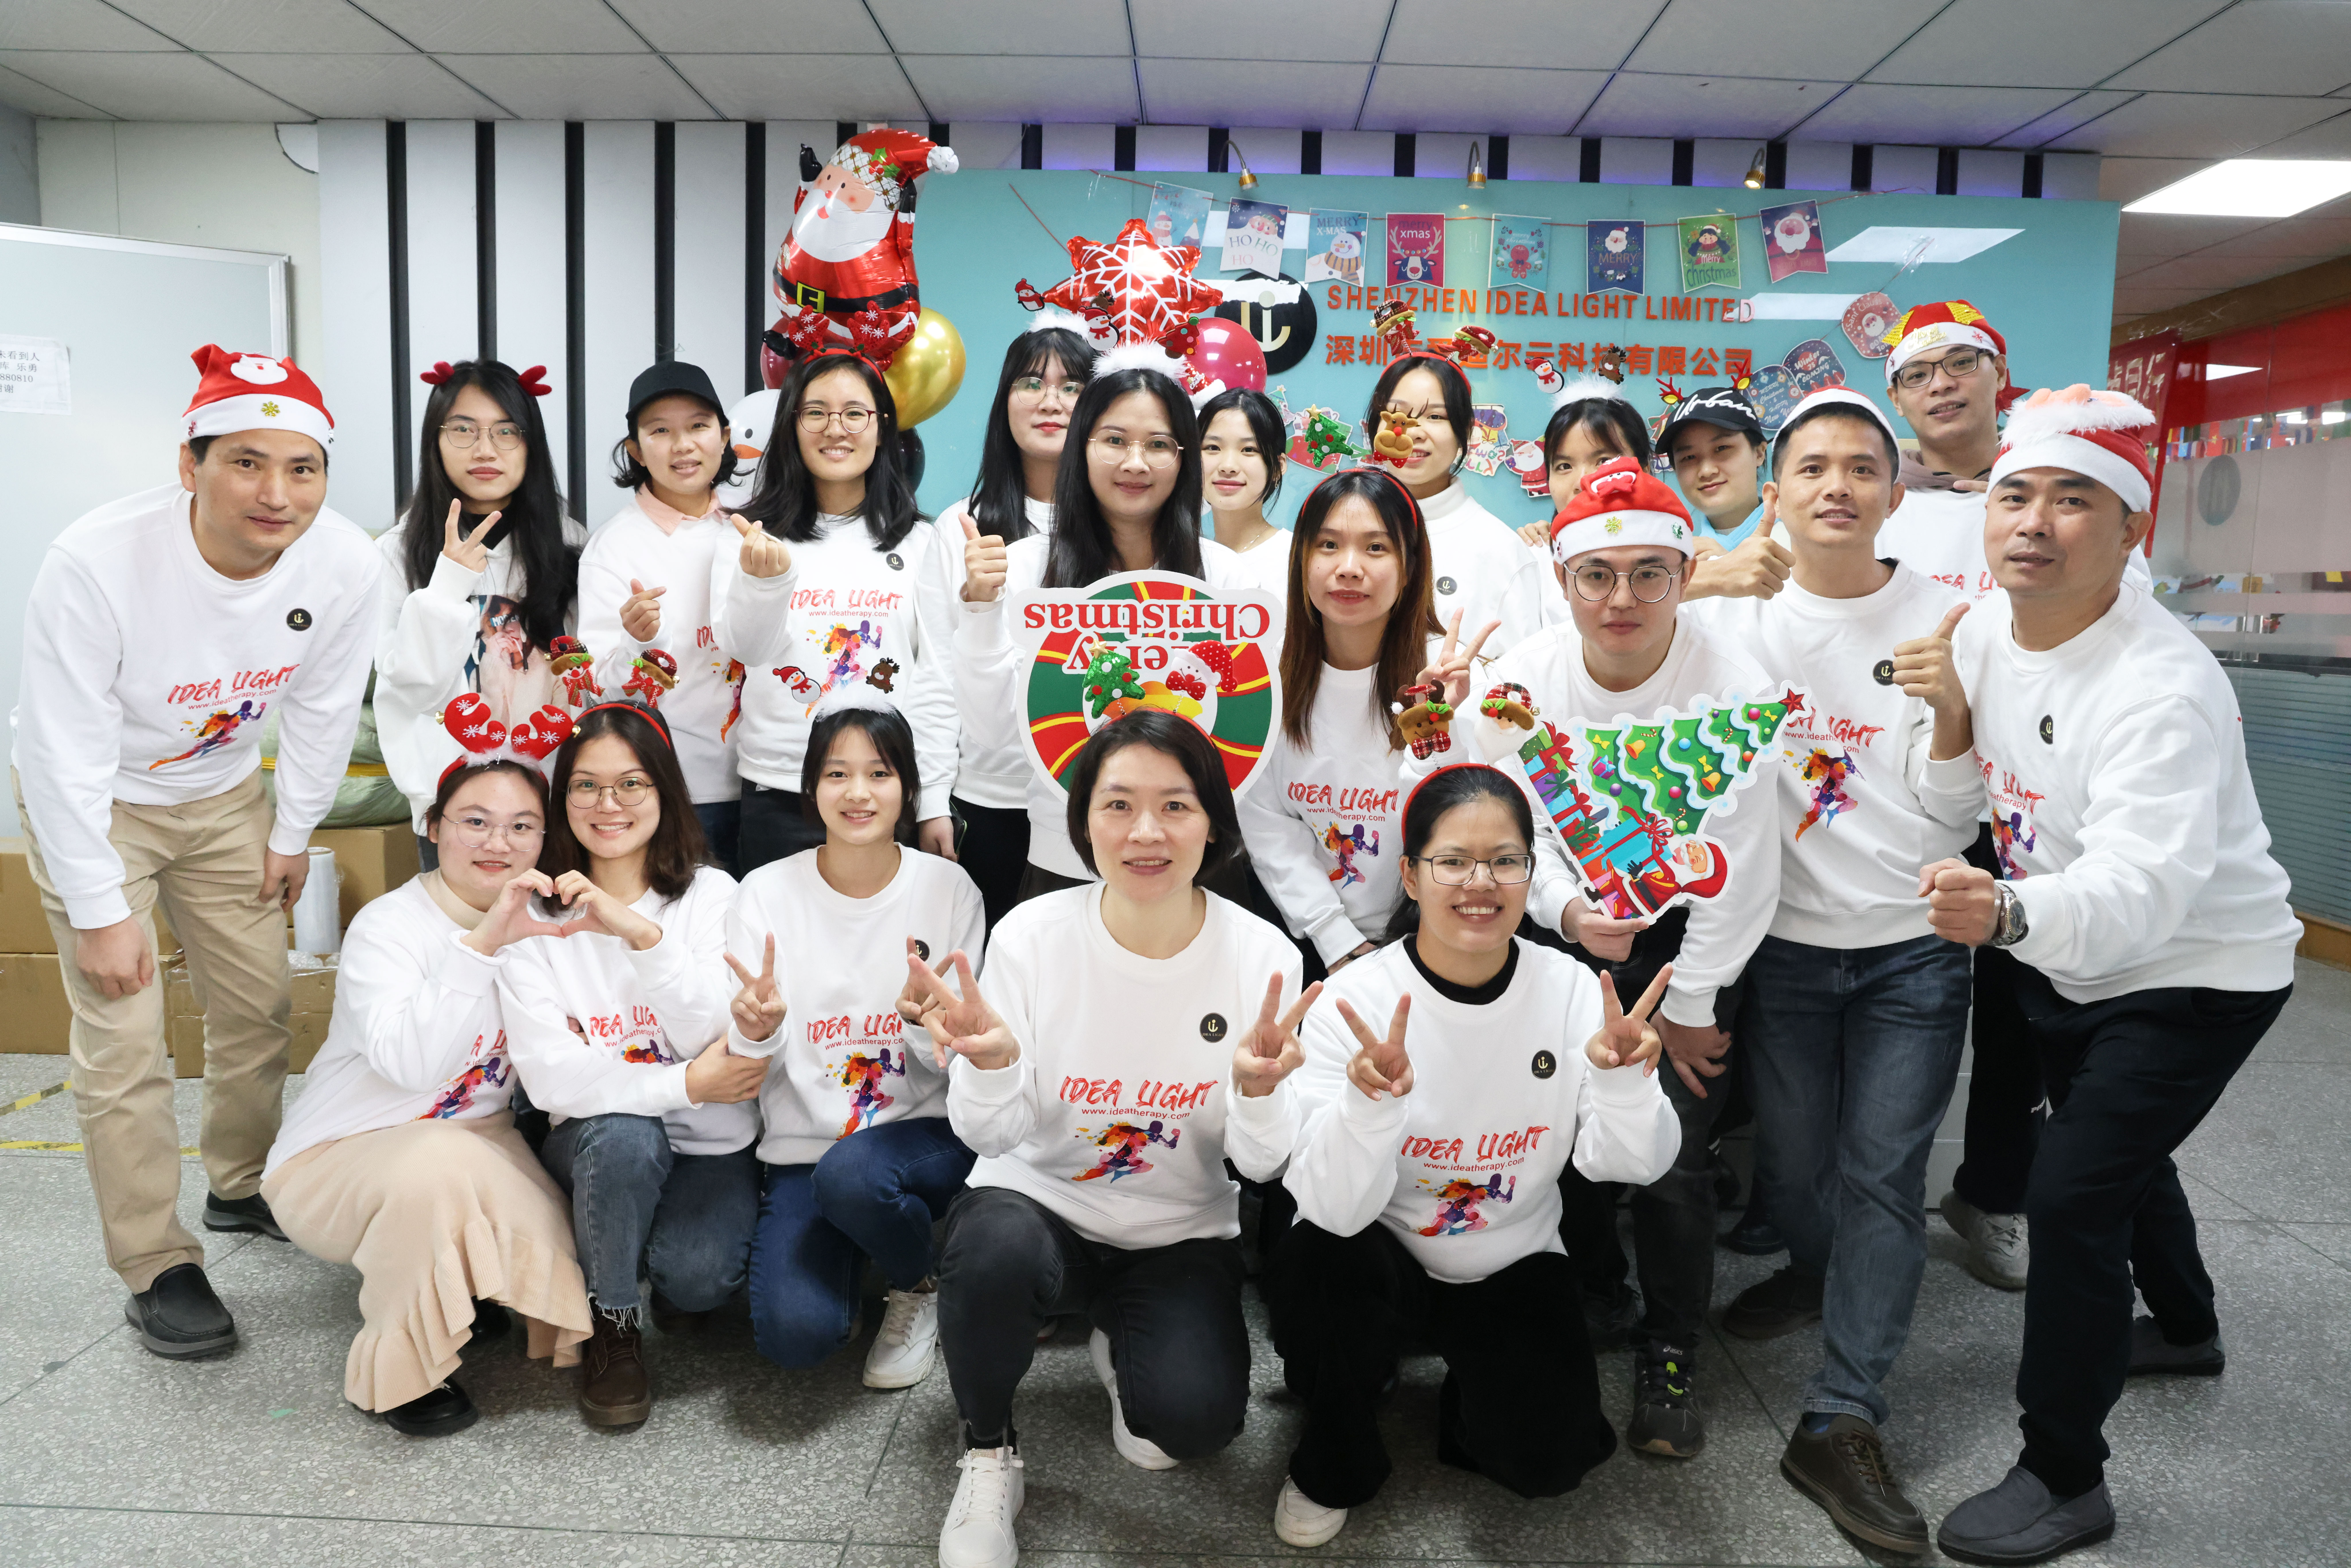 Merry Christmas from Shenzhen Idea Light Team